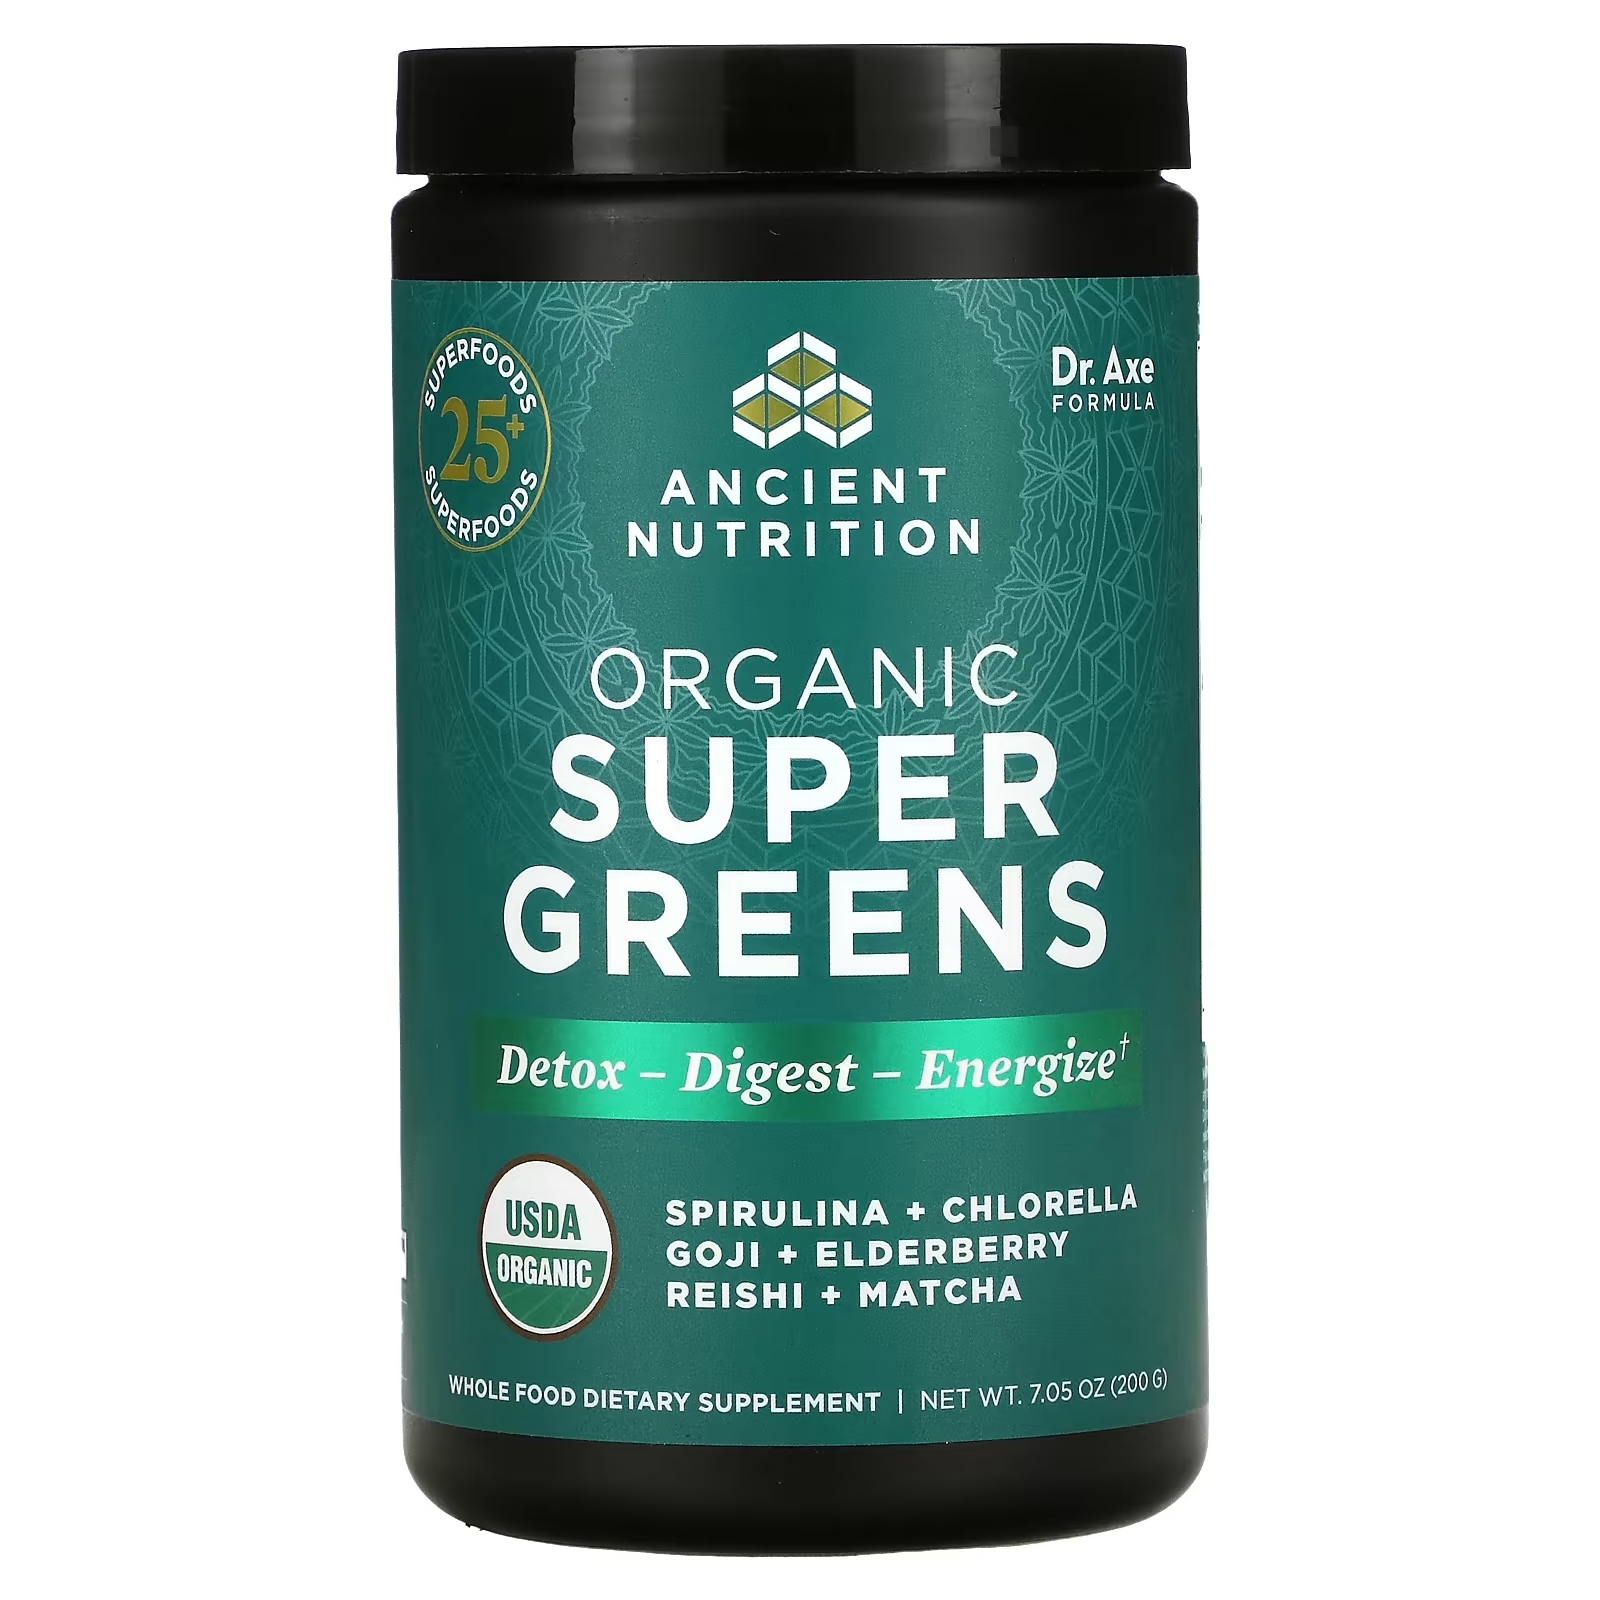 Пищевая Органическая Добавка Dr. Axe / Ancient Nutrition Super Greens, 200 г органическая суперзелень ancient nutrition с мятой 205 г